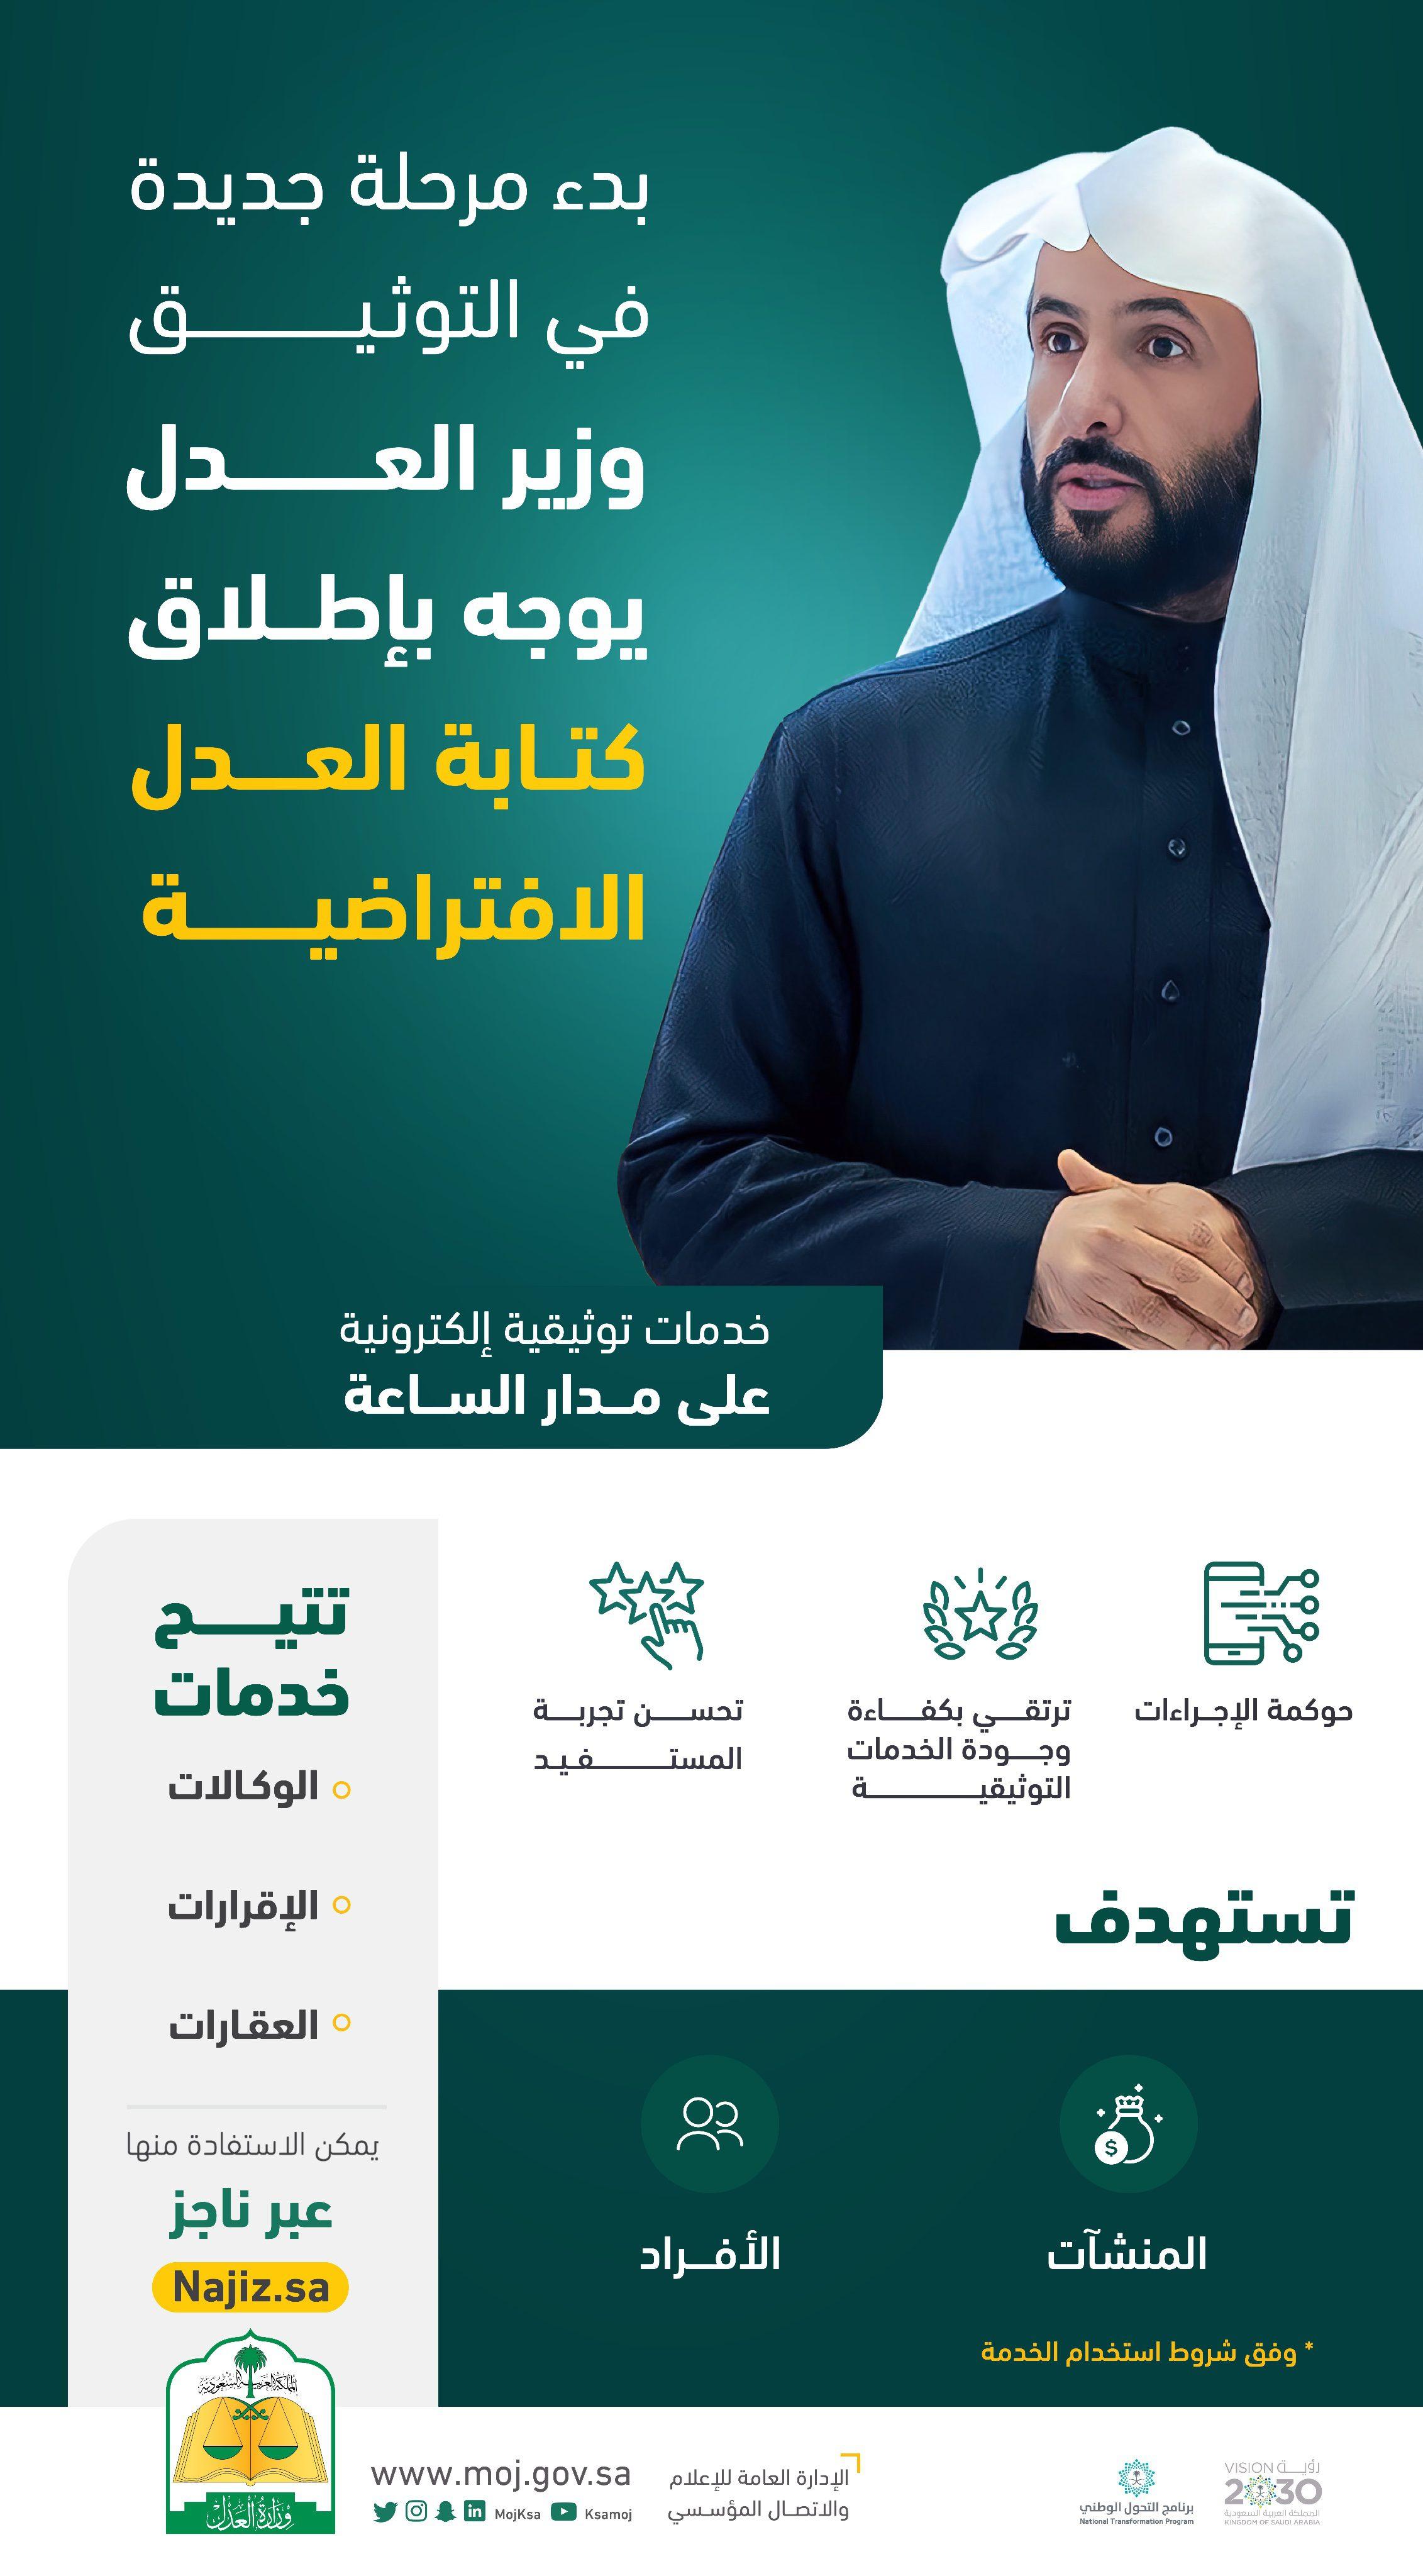 الجوازات السعودية توضح شروط ومتطلبات إصدار إقامة جديدة 1444-2023